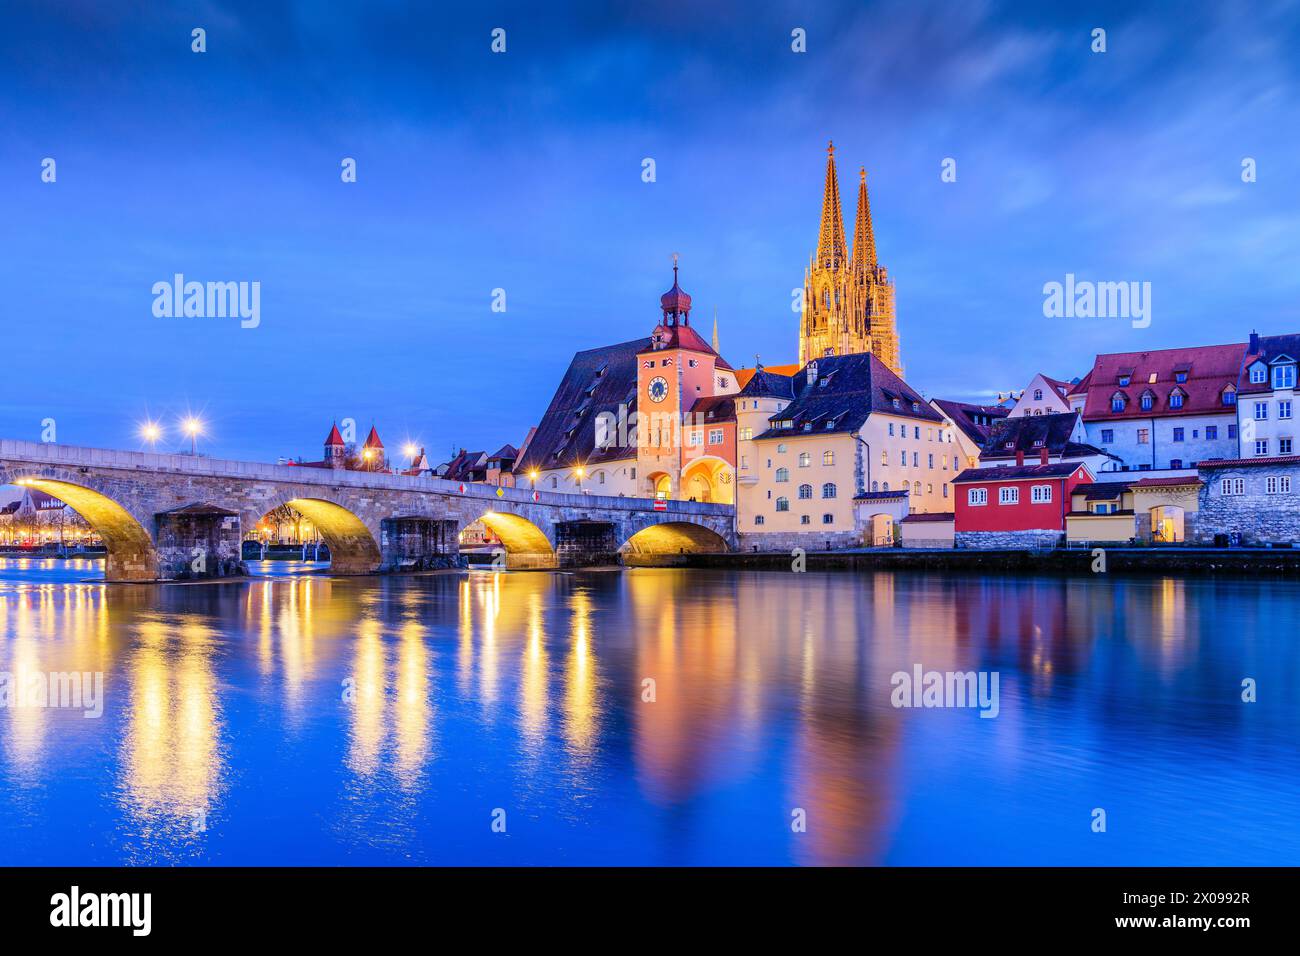 Ratisbona, Baviera, Alemania. Catedral de St. Pedro y el puente de piedra sobre el río Danubio por la noche. Foto de stock